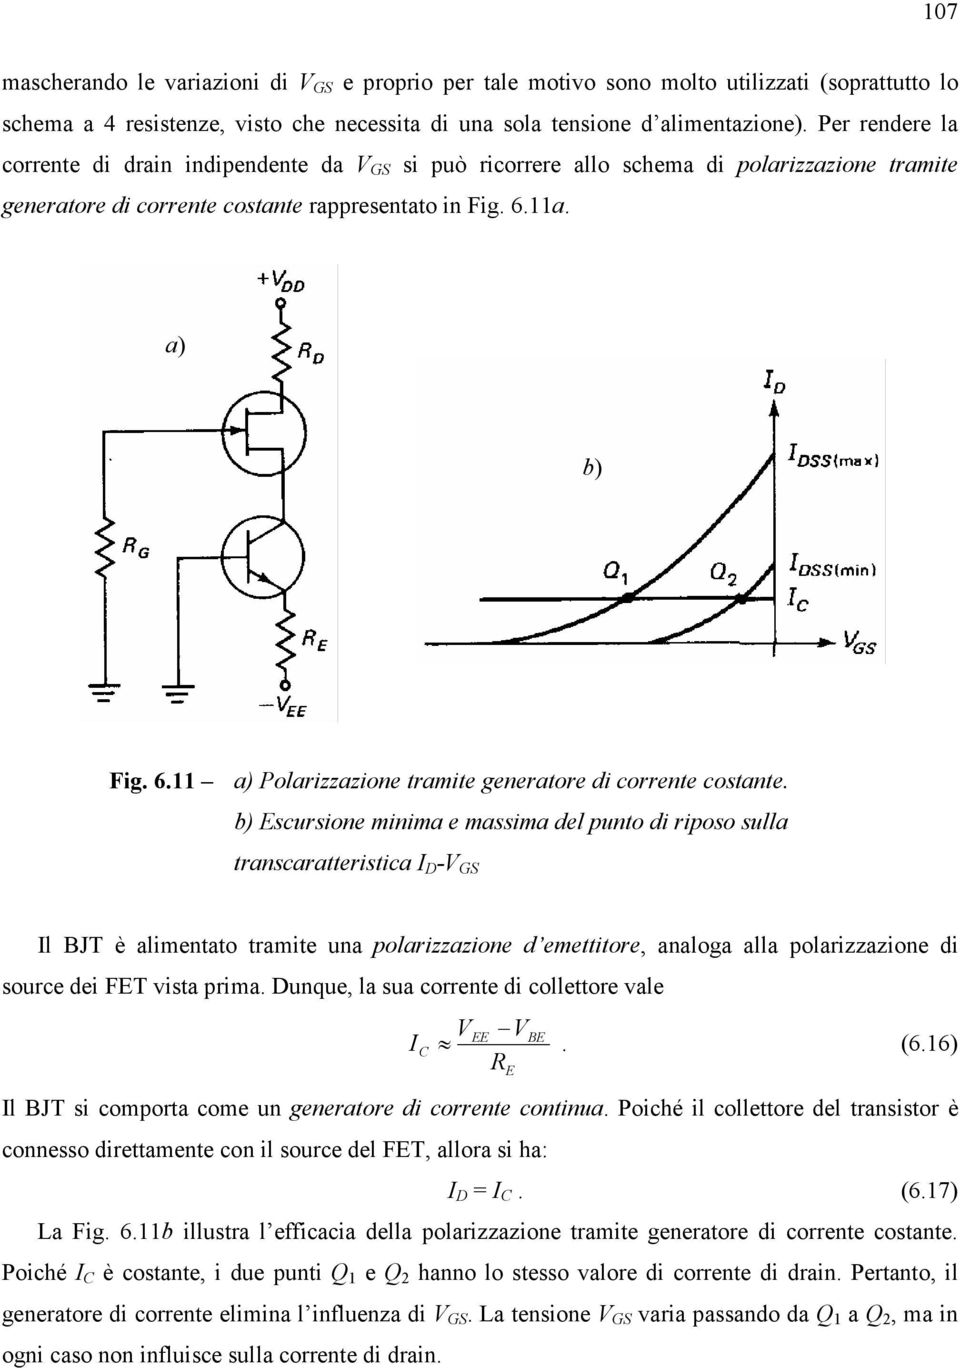 11a. a) b) Fig. 6.11 a) Polarizzazione tramite generatore di corrente costante.